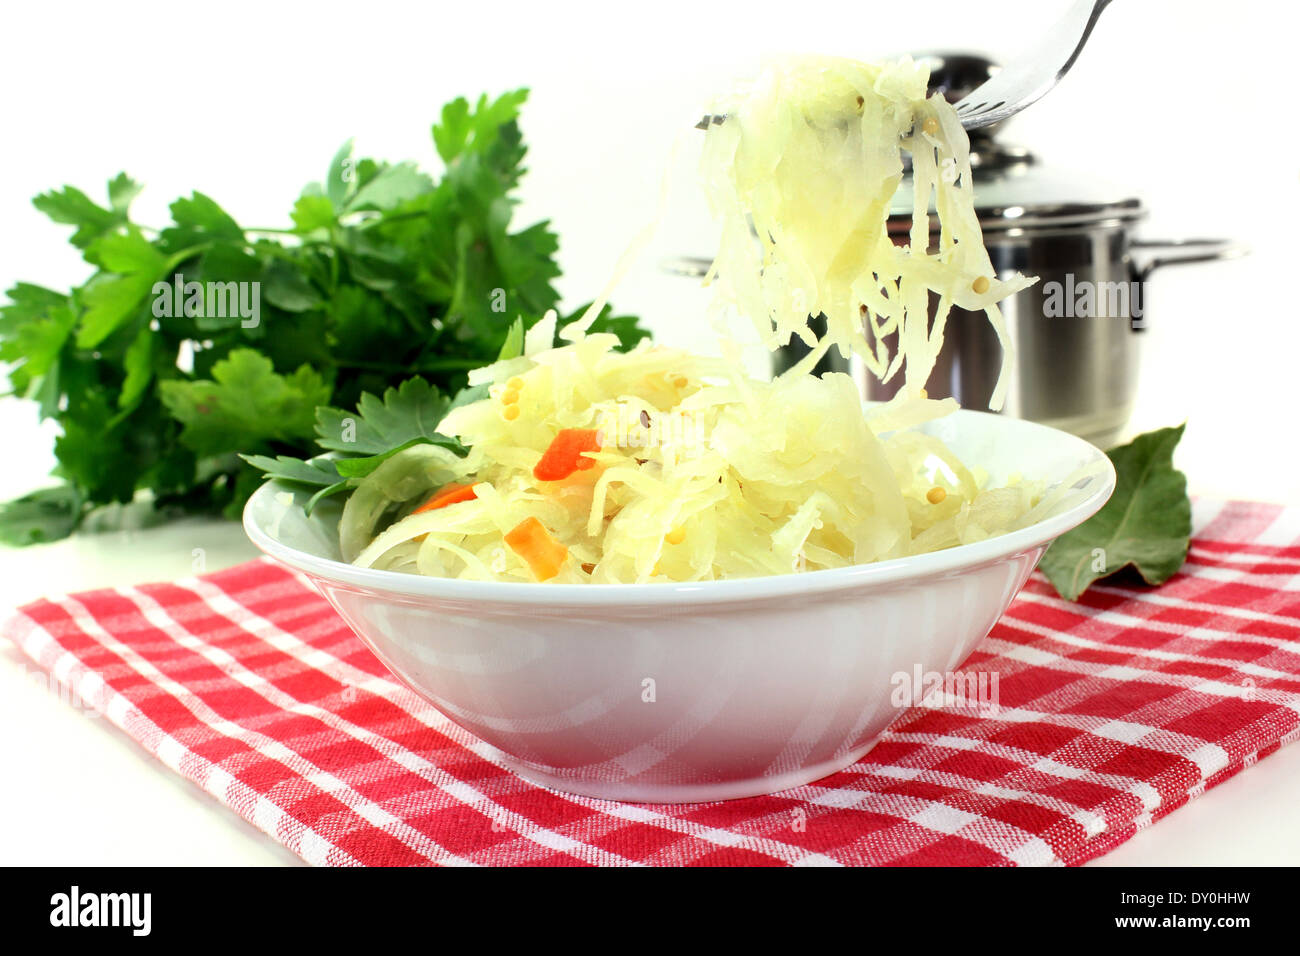 A white bowl with fresh sauerkraut Stock Photo